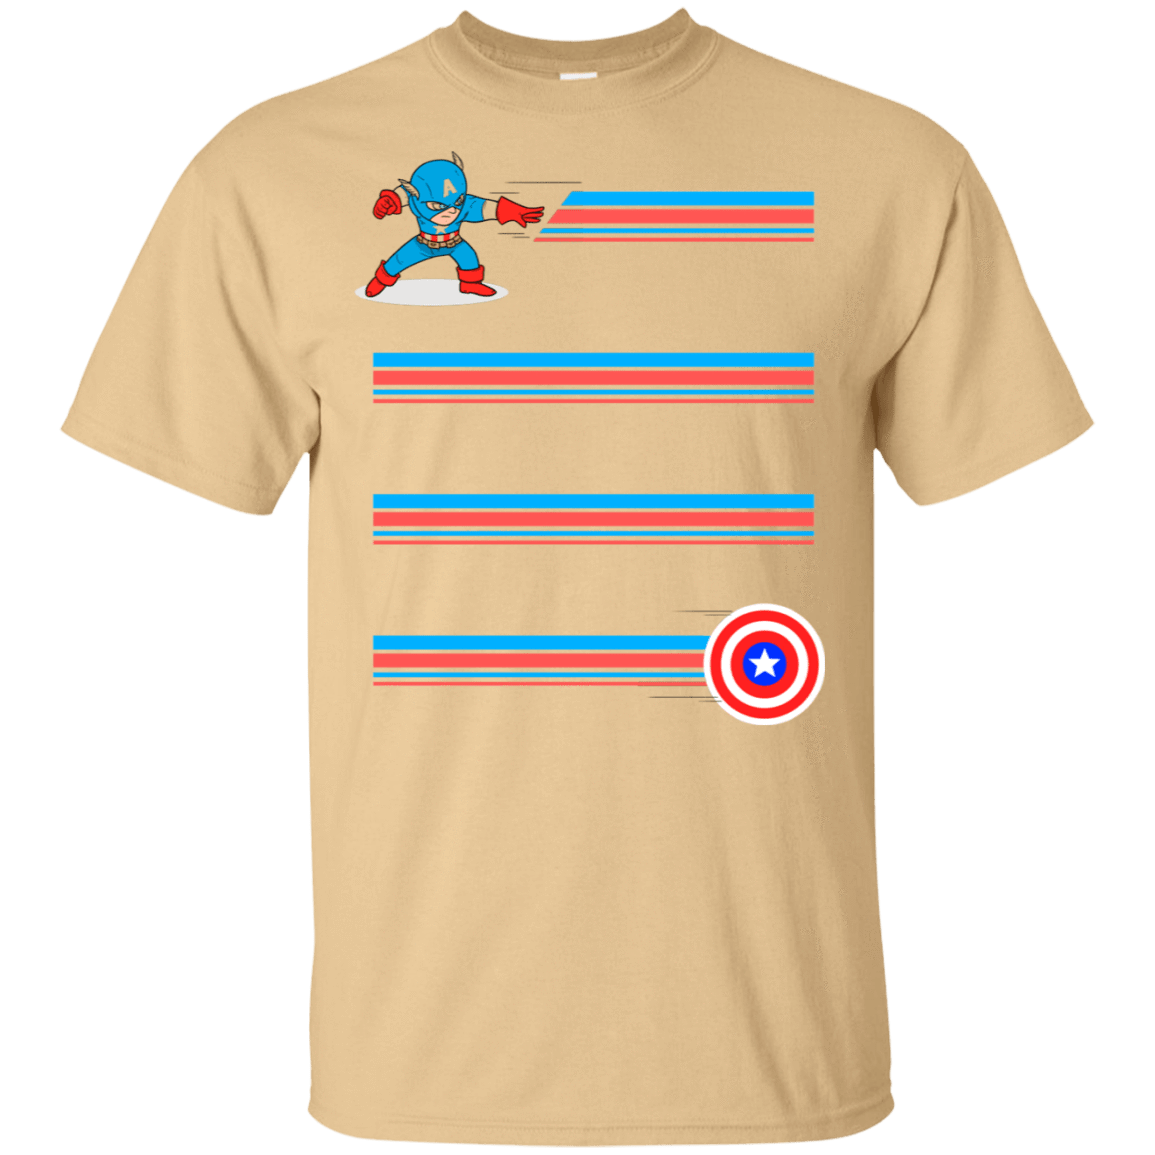 T-Shirts Vegas Gold / S Line Captain T-Shirt